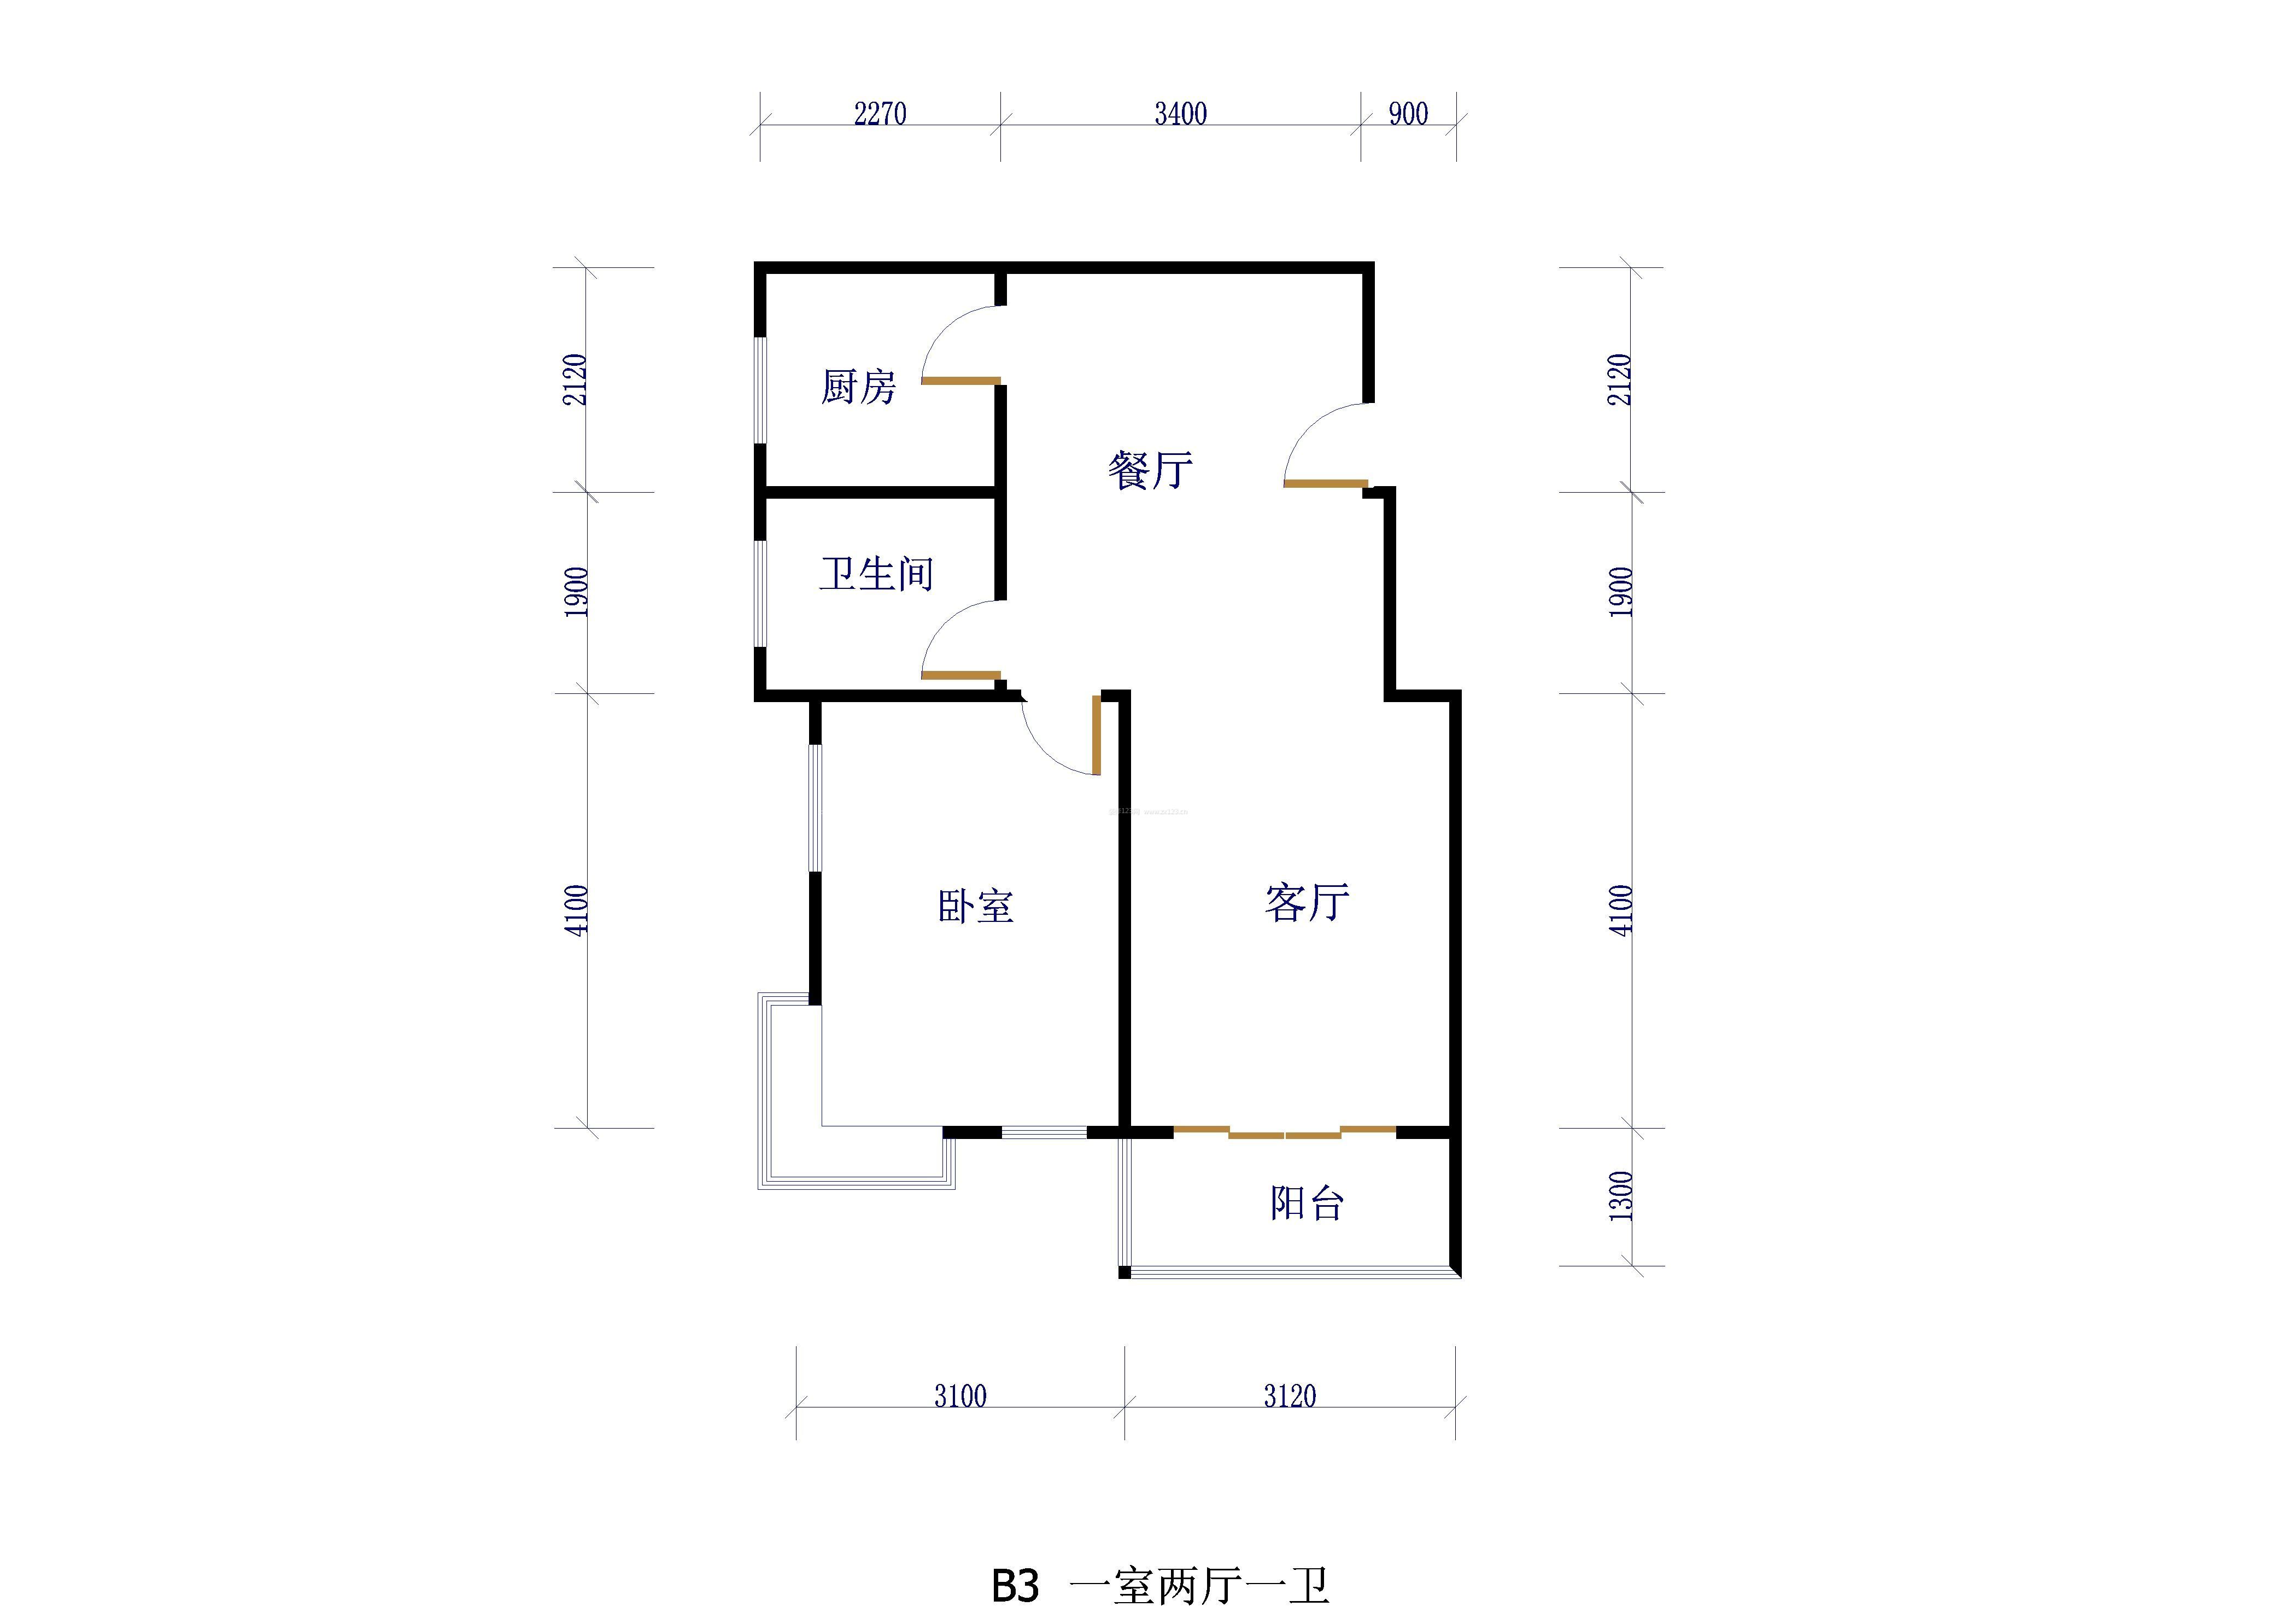 一室两厅单身公寓平面设计图